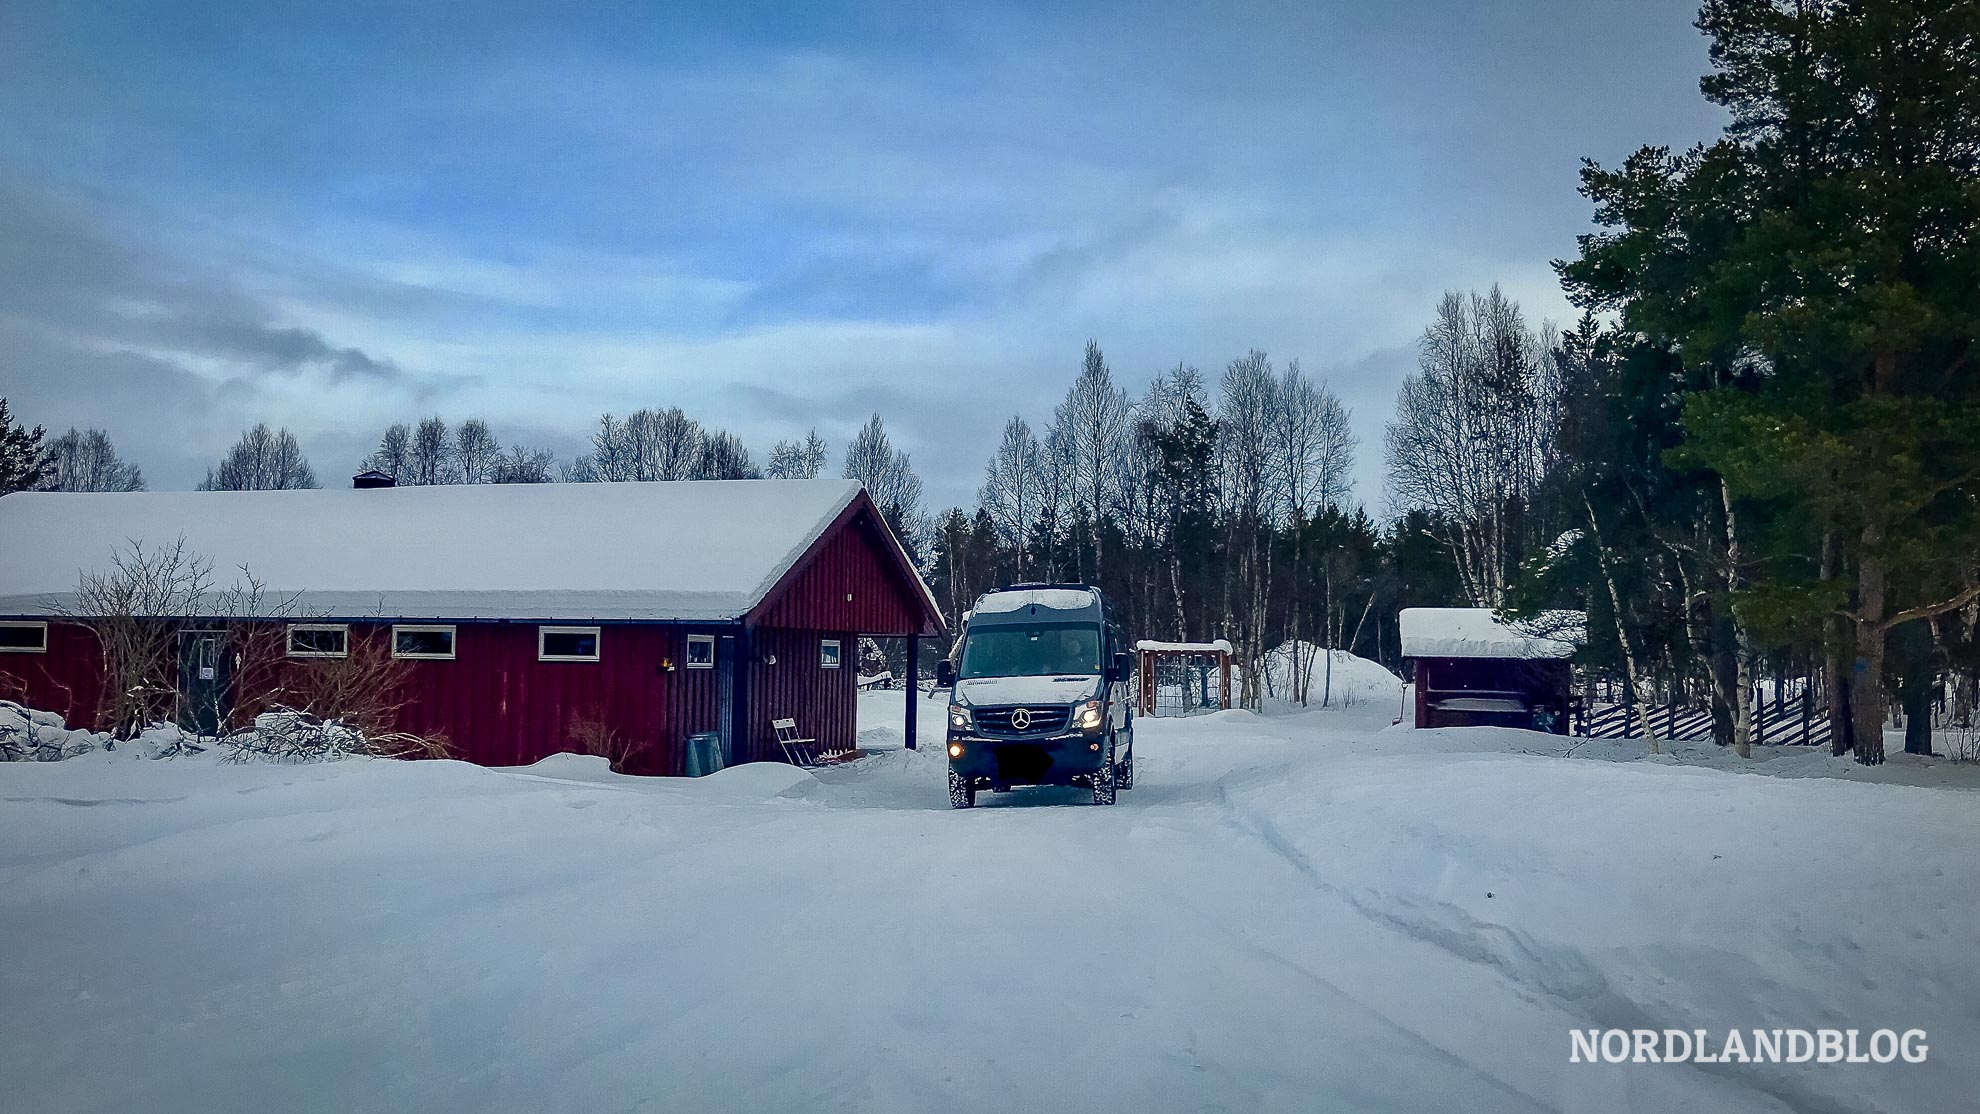 Röste Hyttetun Camping Os Femundsmarka Norwegen Winterwonderland-Tour Kastenwagen